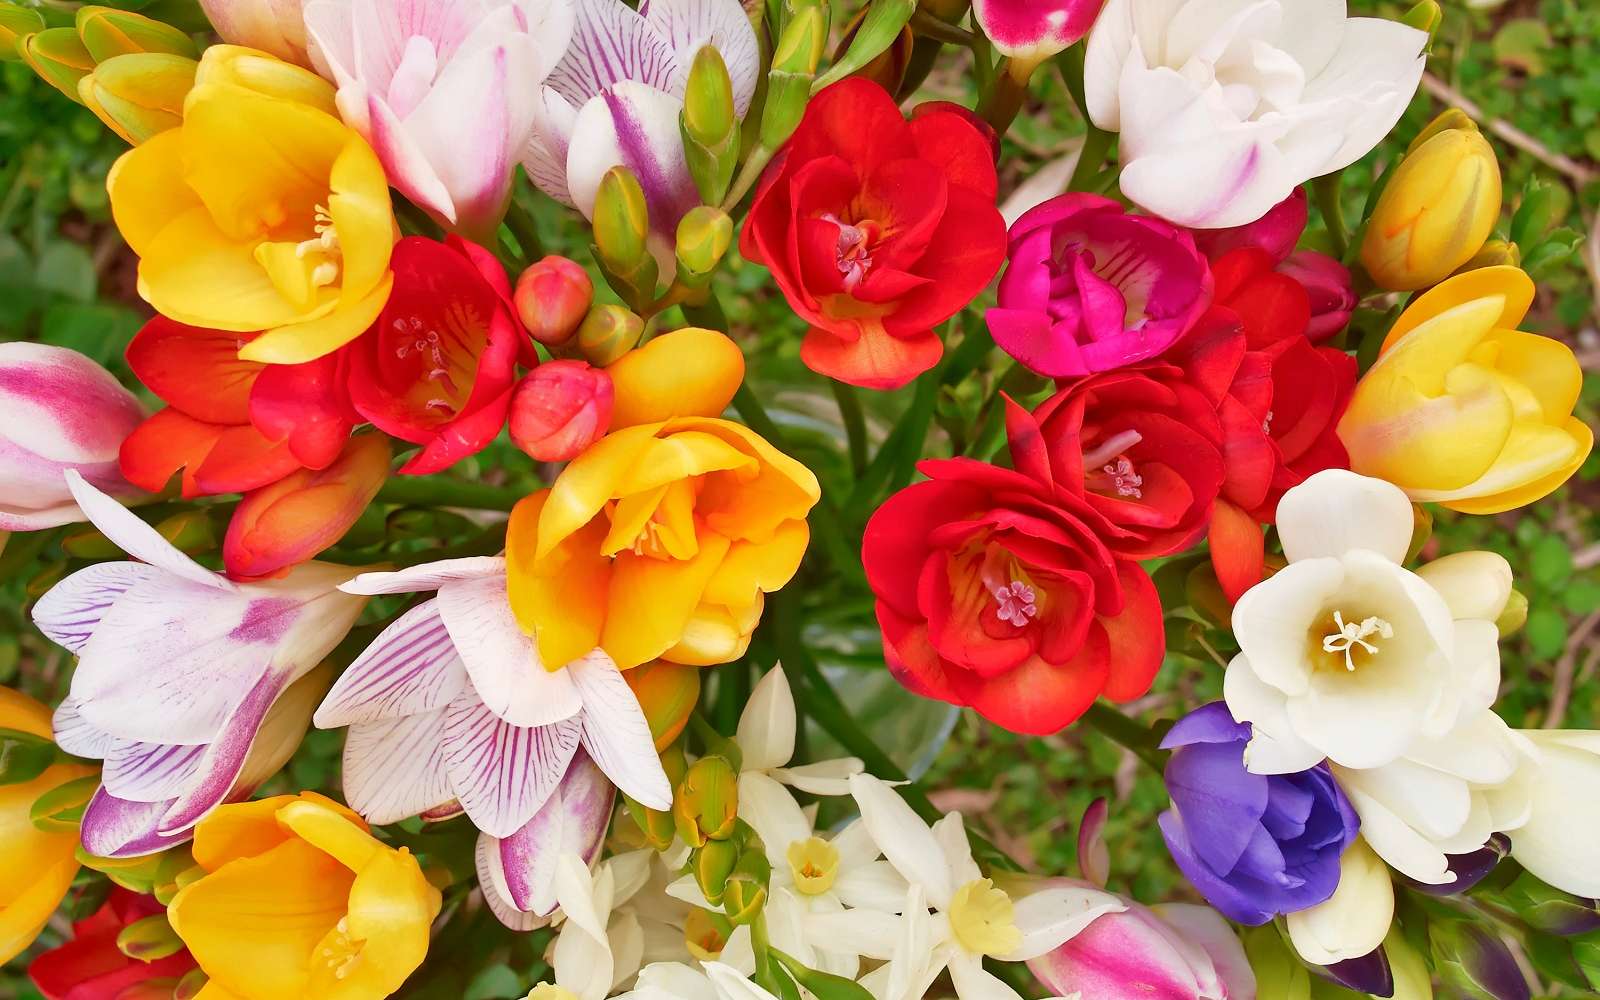 Bouquet de freesias aux couleurs multiples. © Dimitrios, Adobe Stock